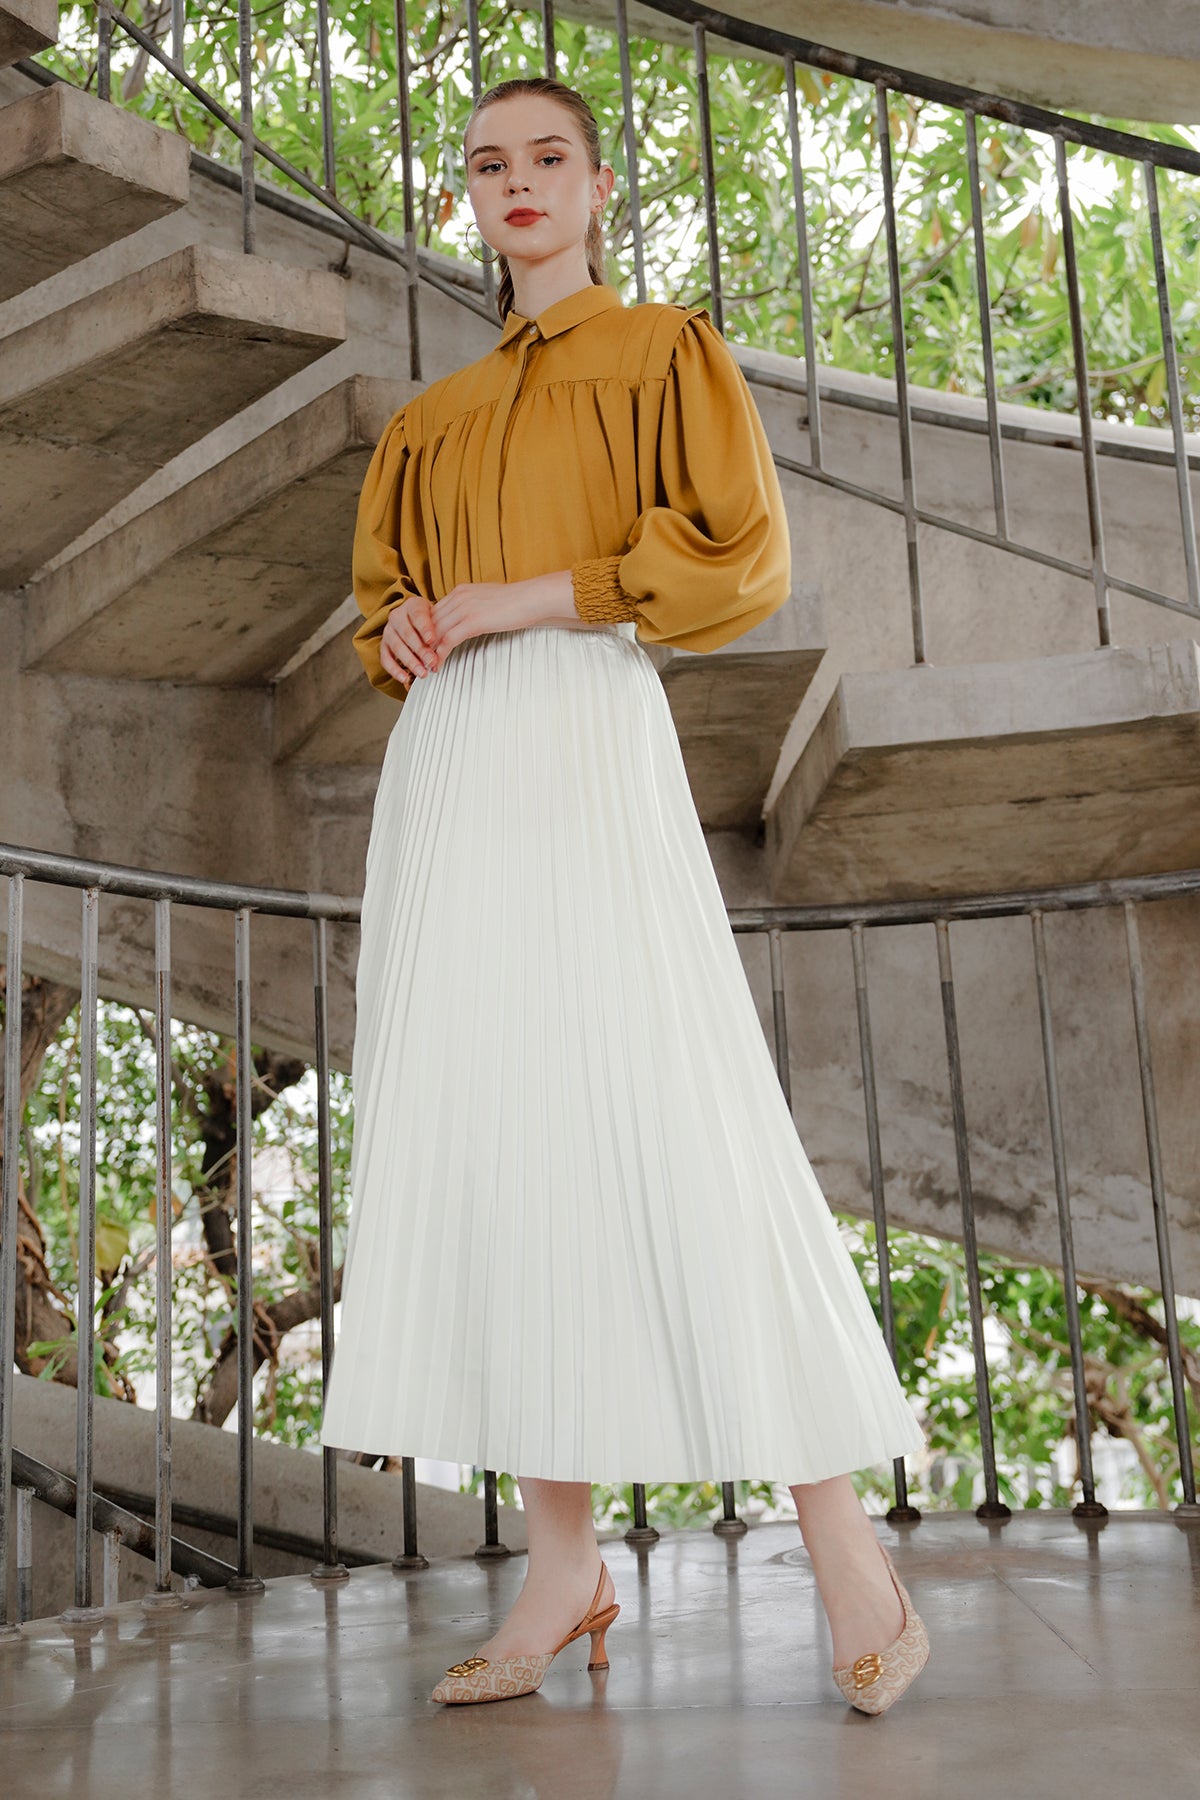 Serena Pleats Skirt - White